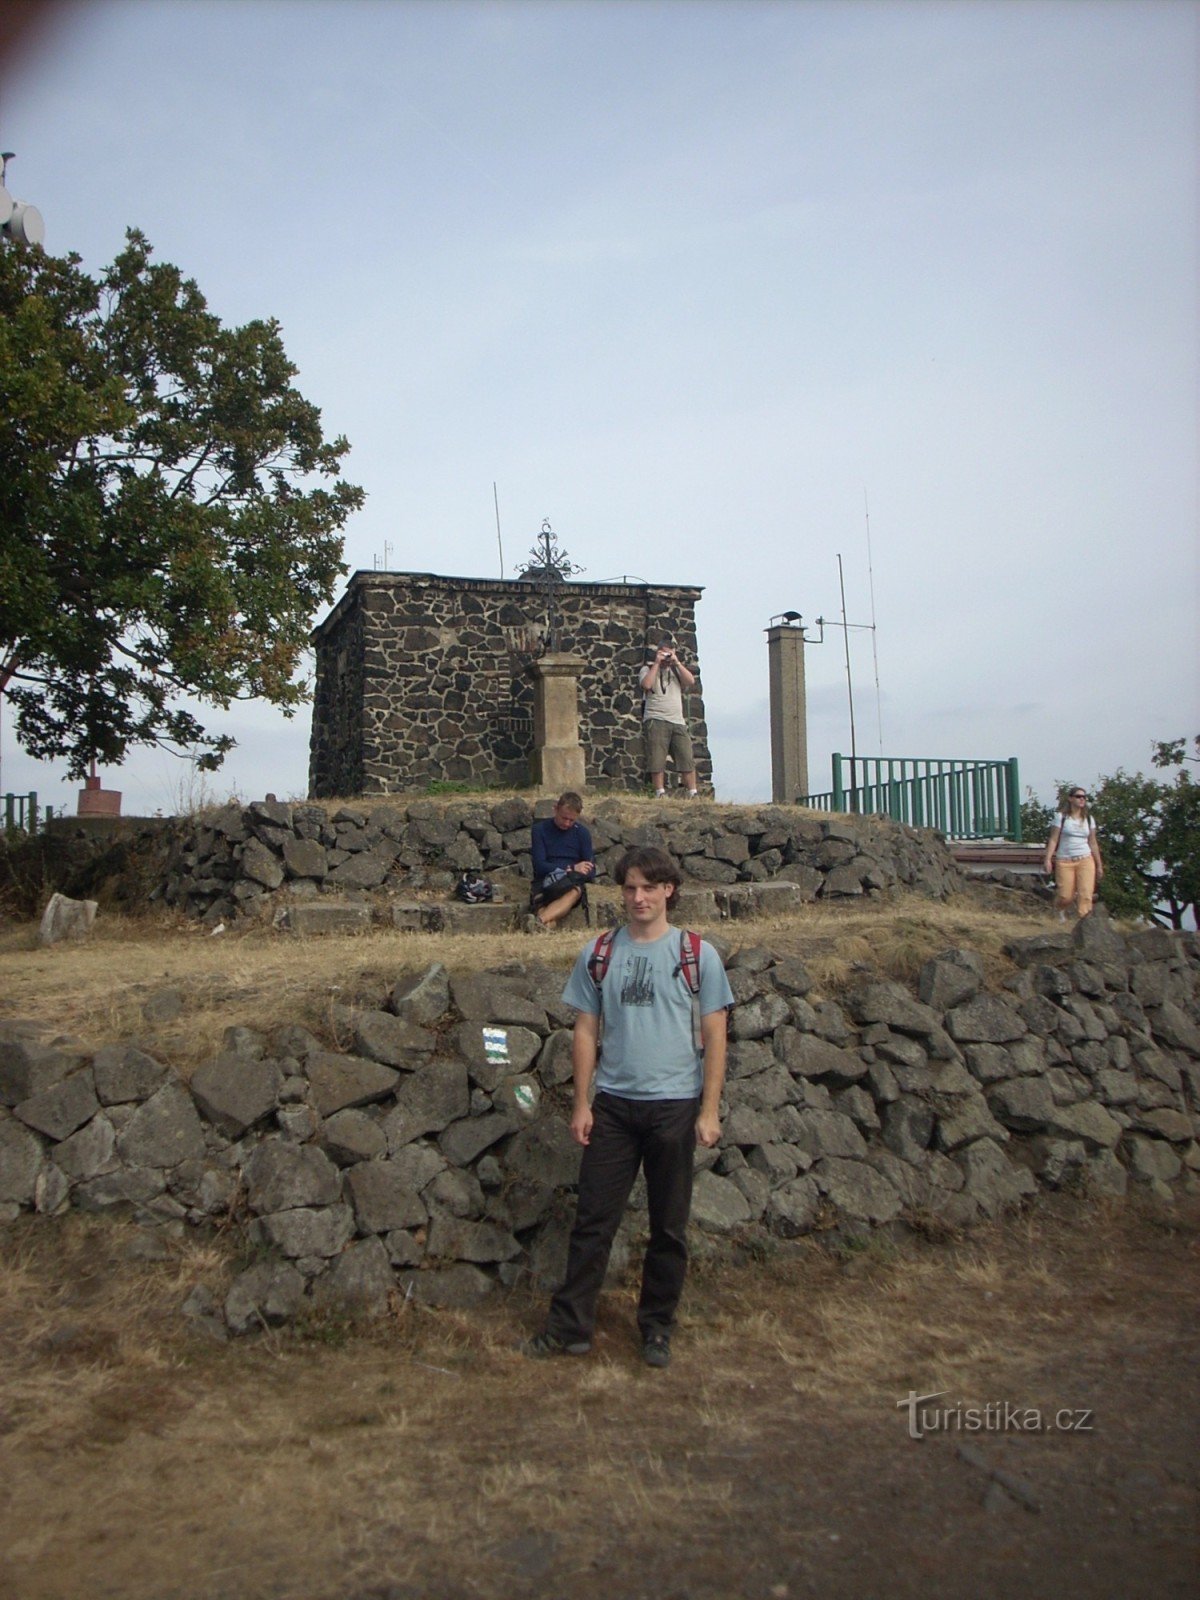 τα ερείπια του πύργου επιφυλακής στο Lovoš